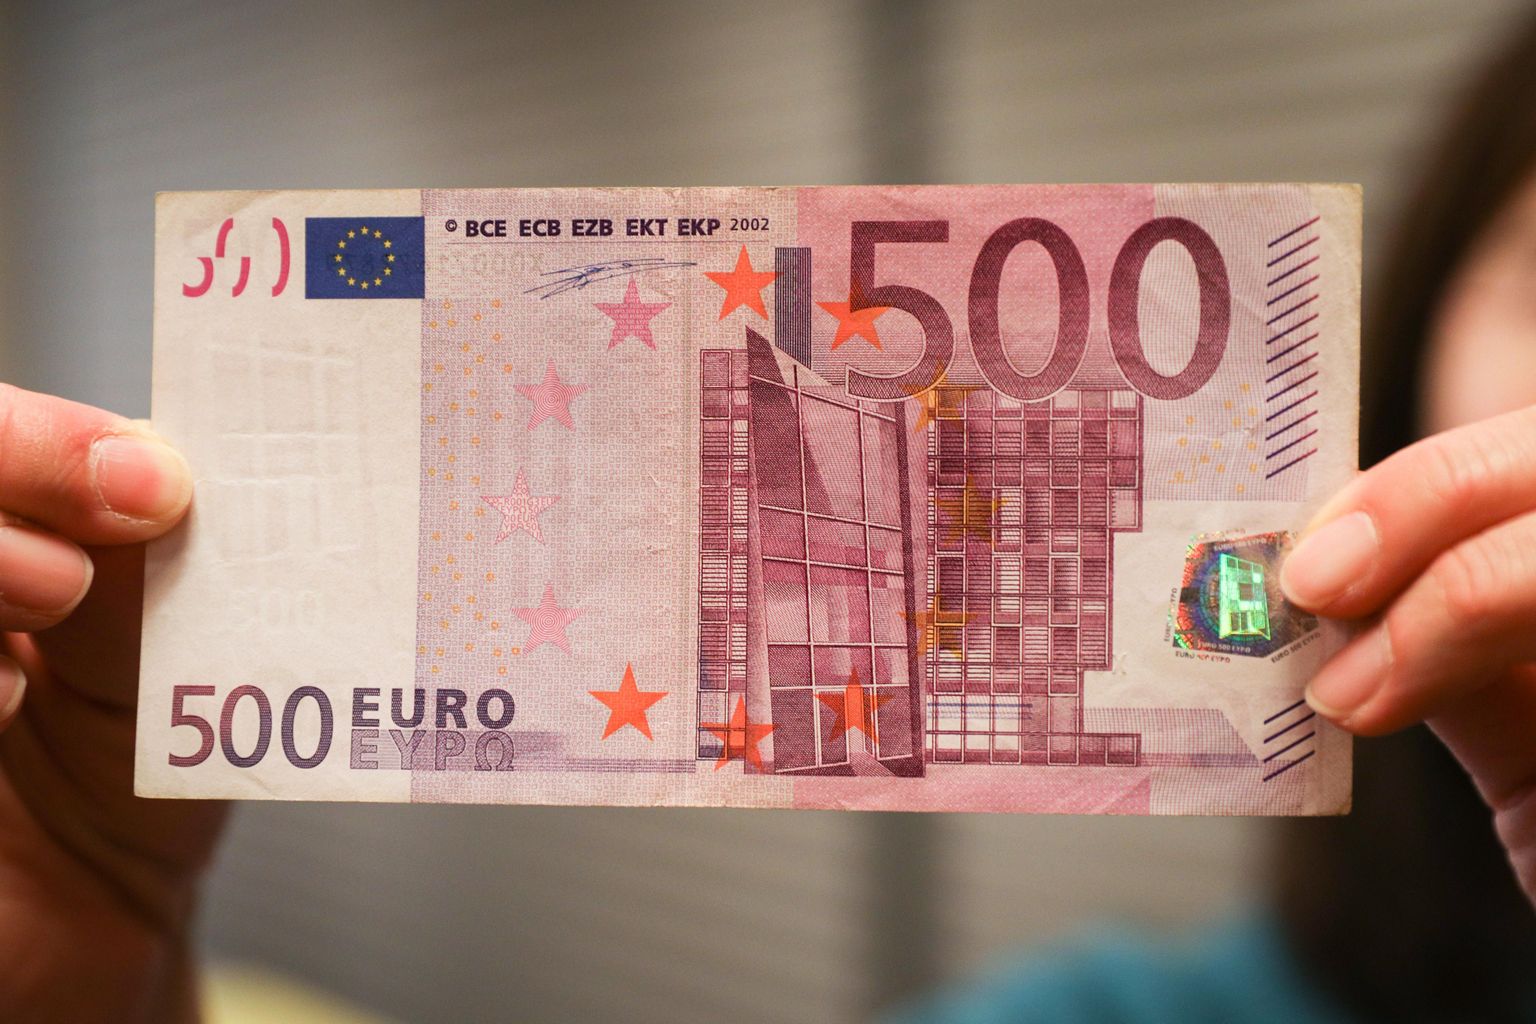 500 eiro banknote